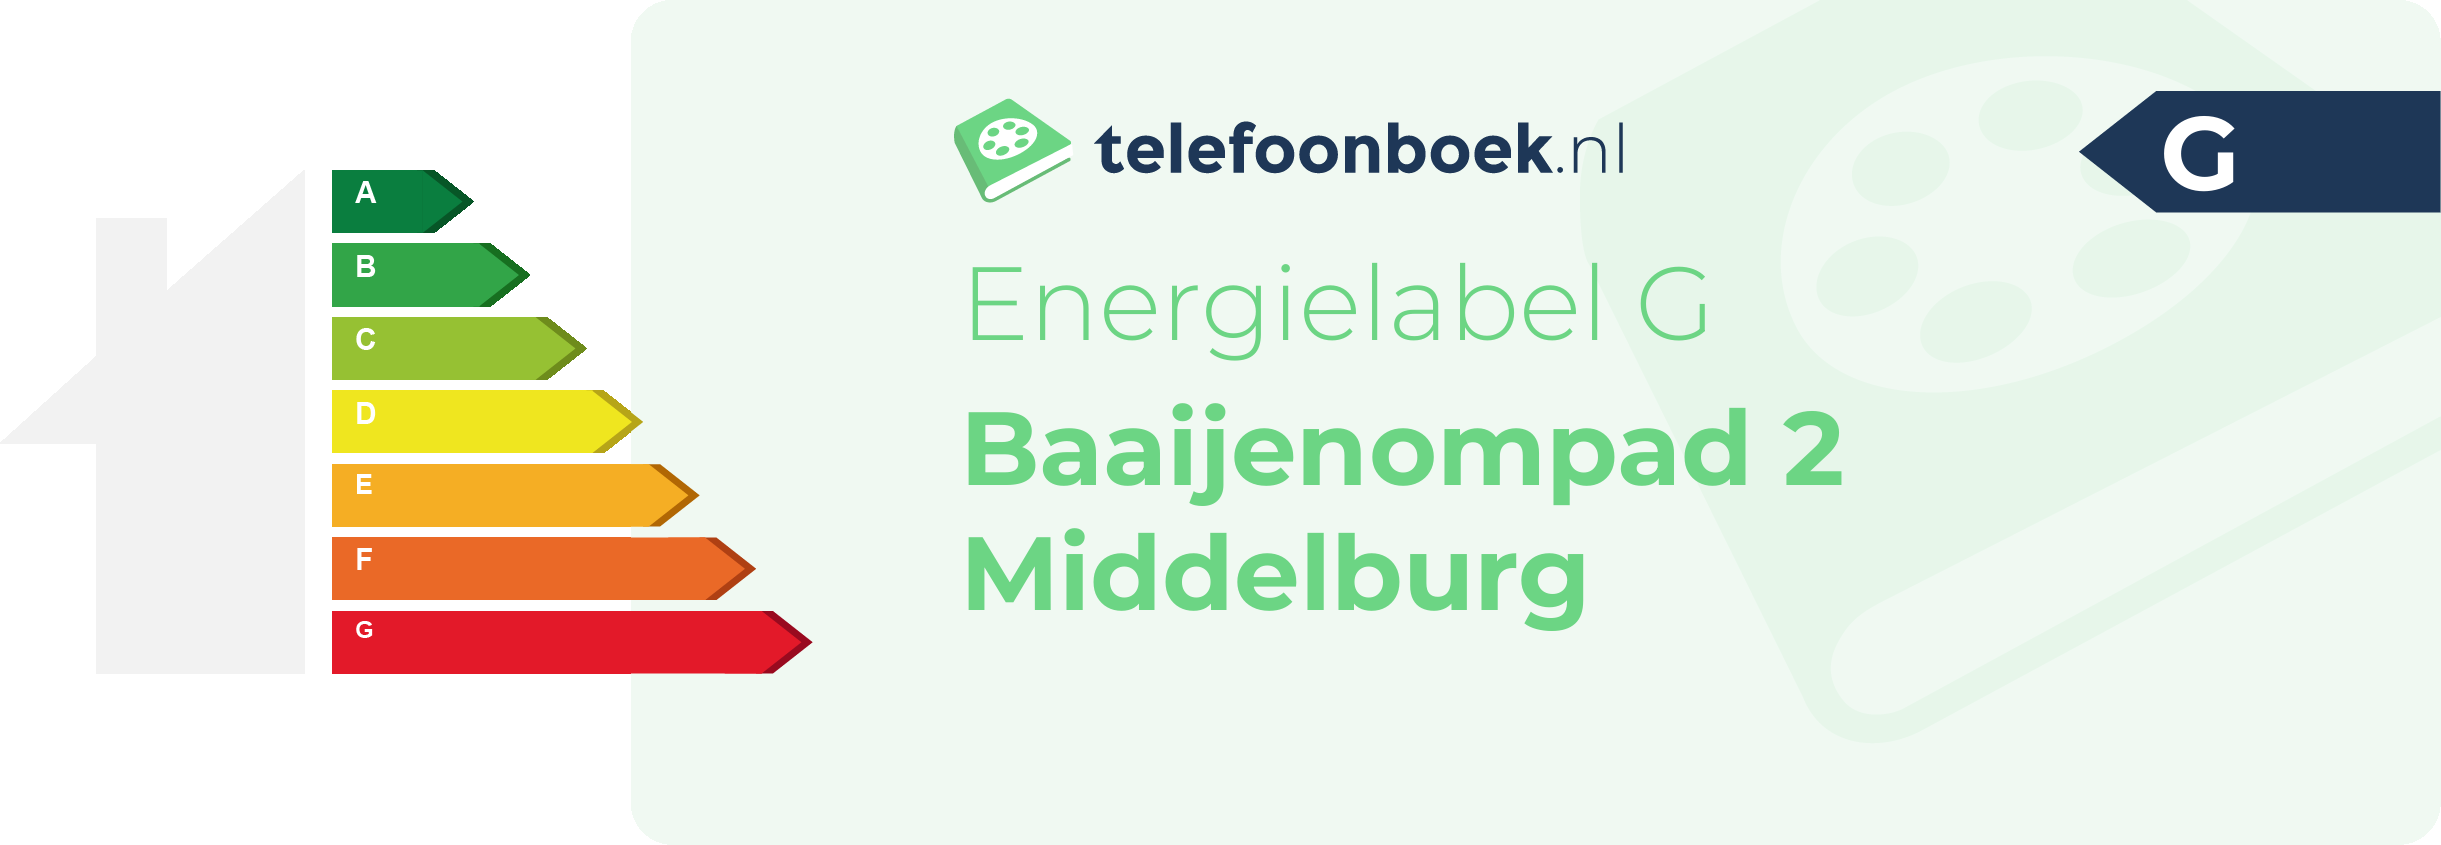 Energielabel Baaijenompad 2 Middelburg